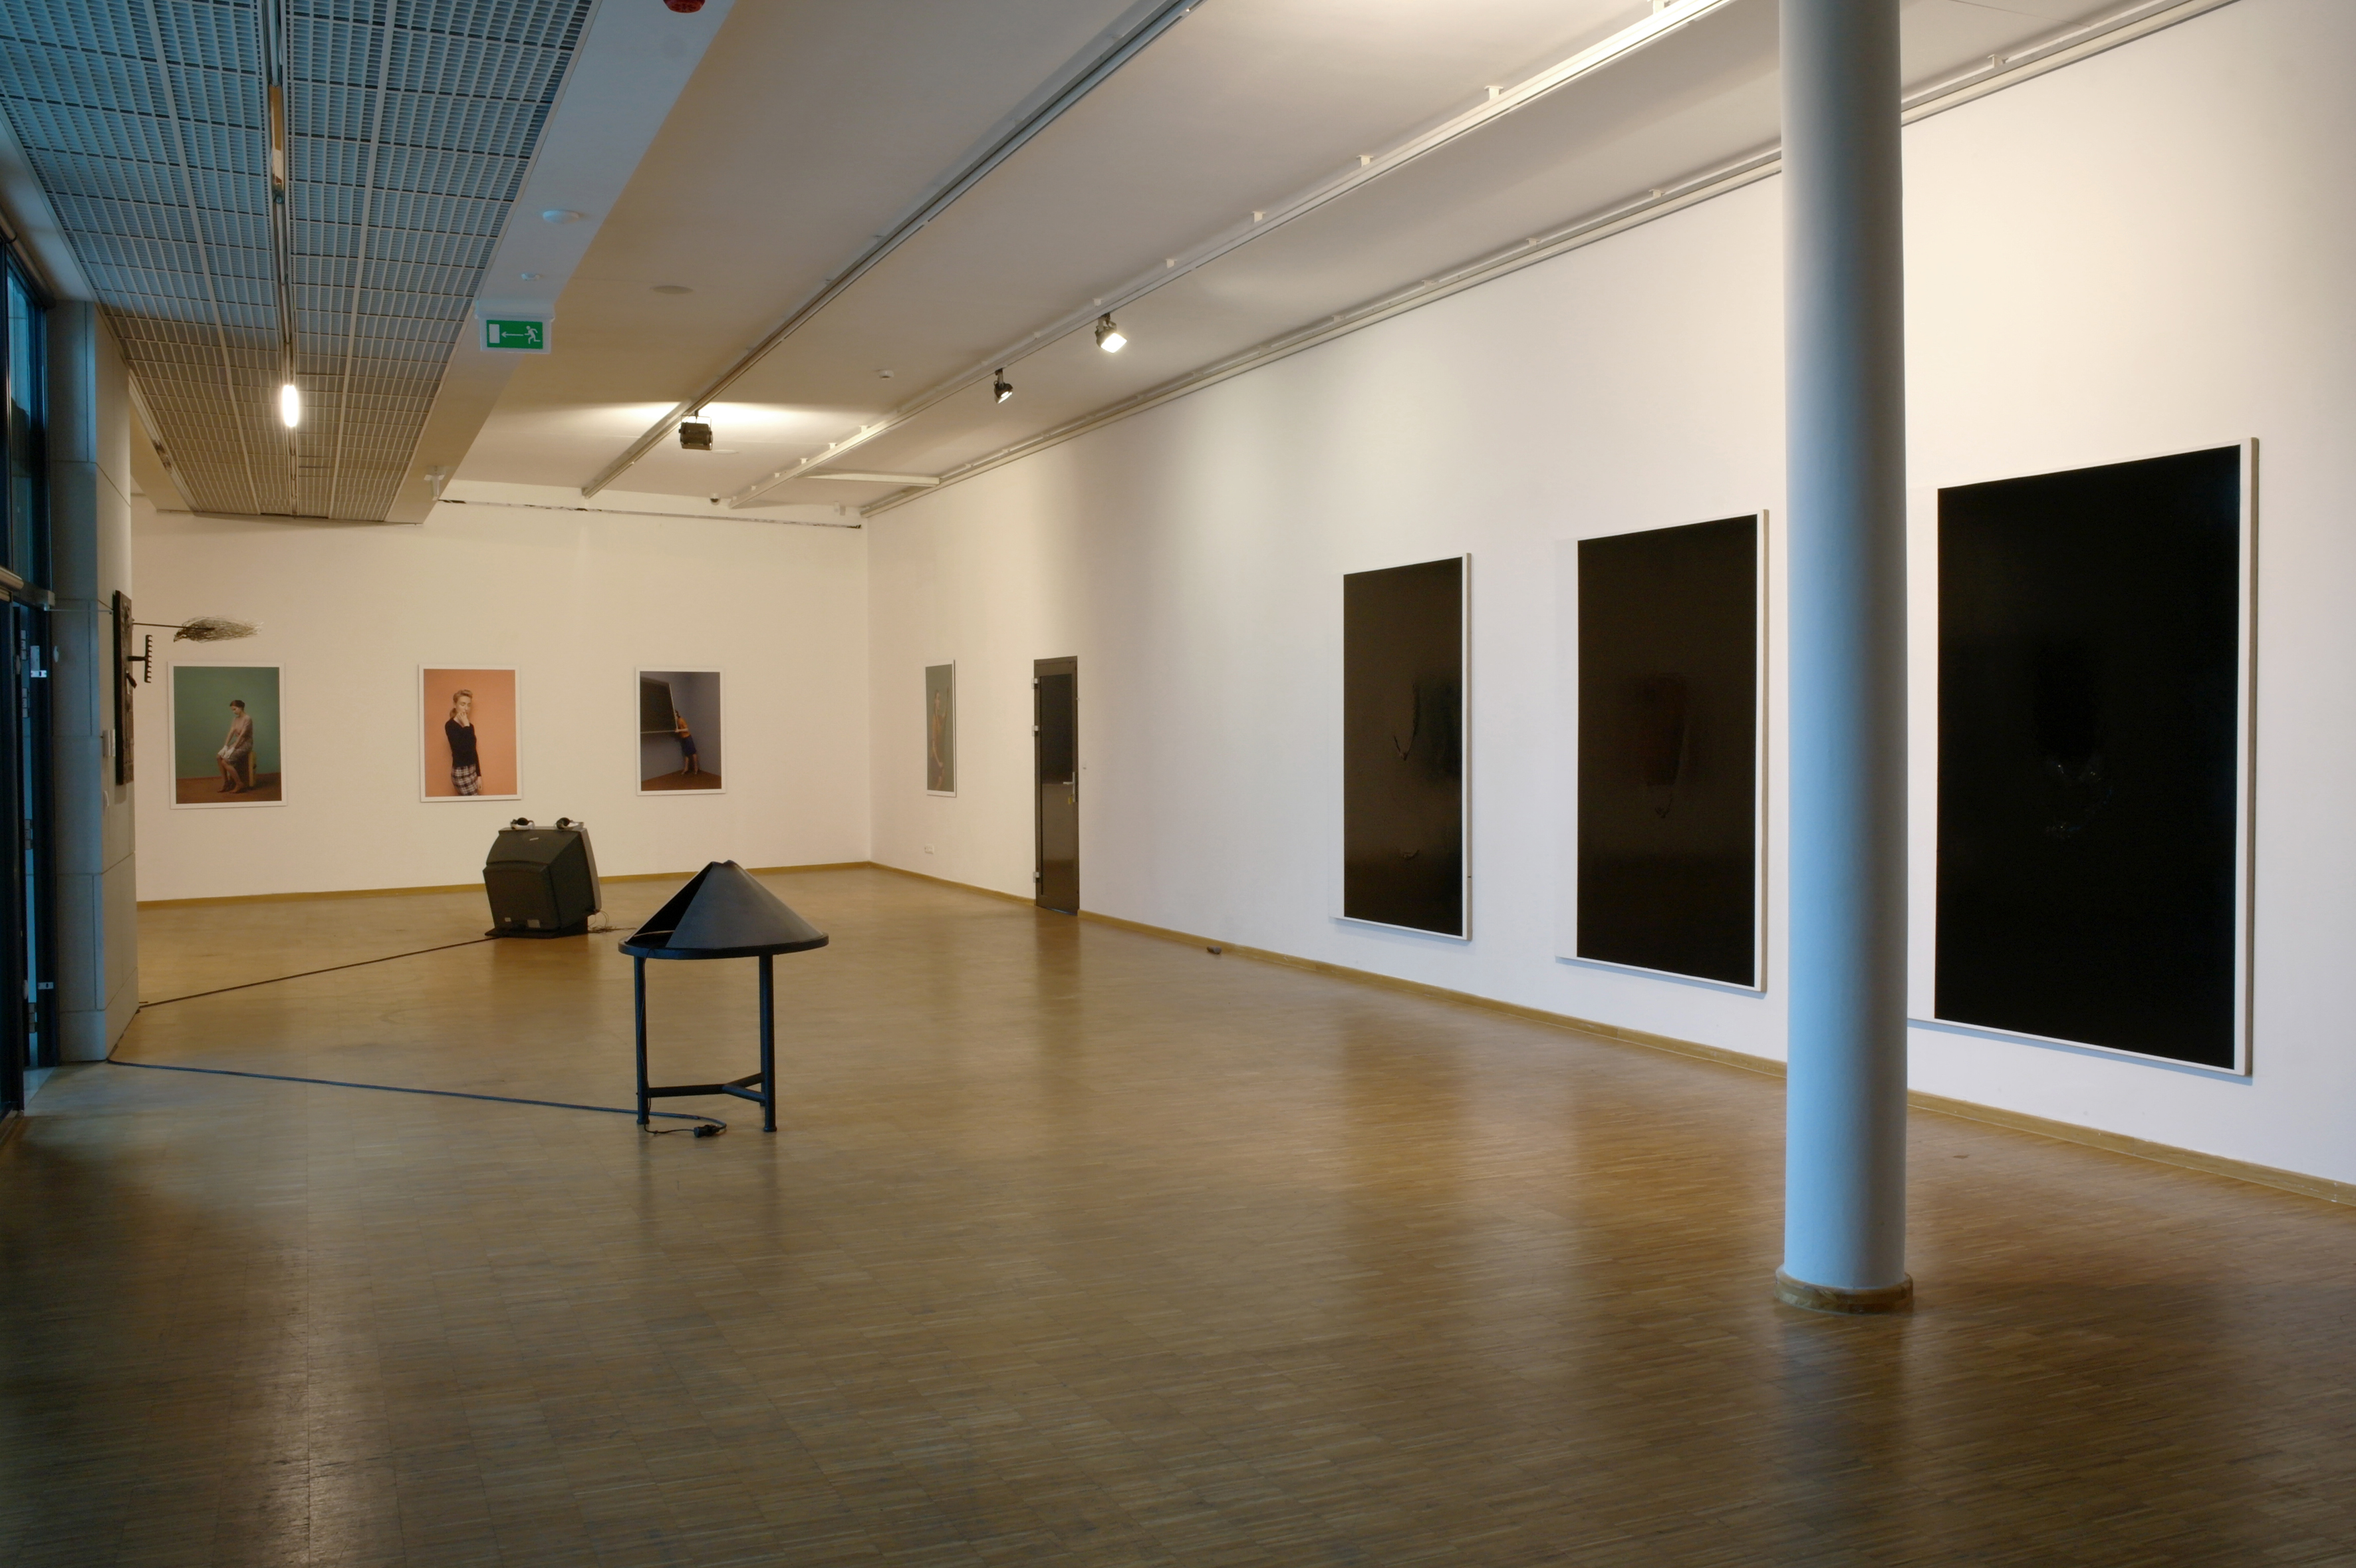 Widok ogólny wystawy, I piętro, fot. T. Baran